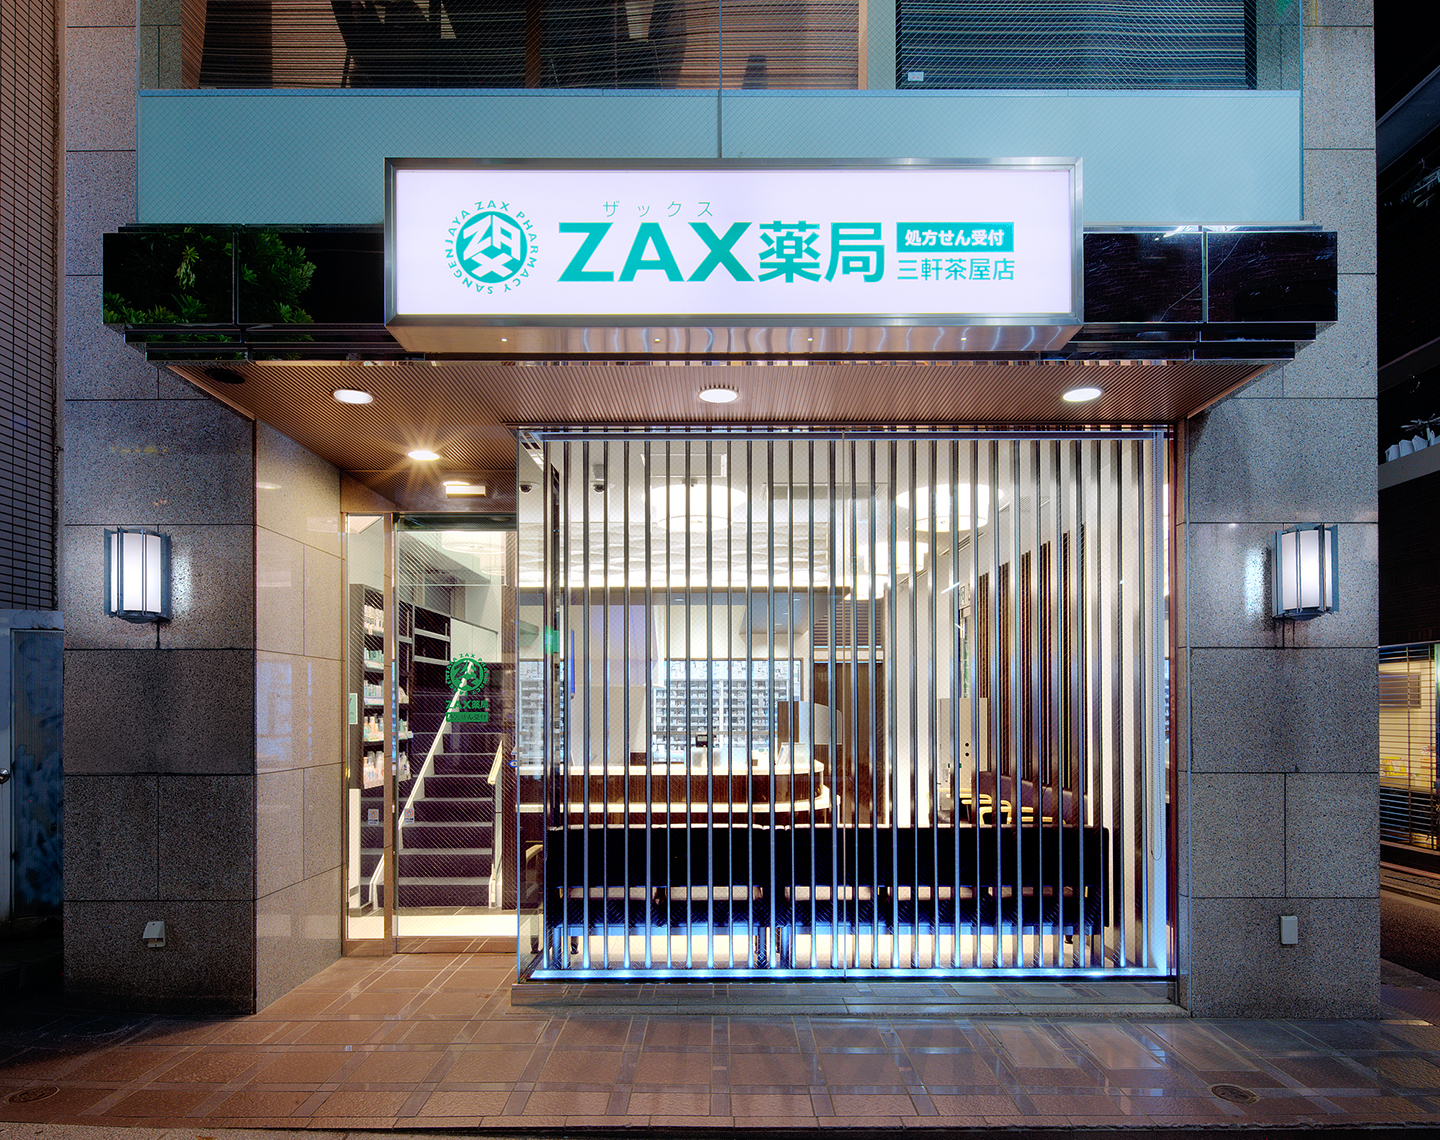 ZAX薬局 三軒茶屋店